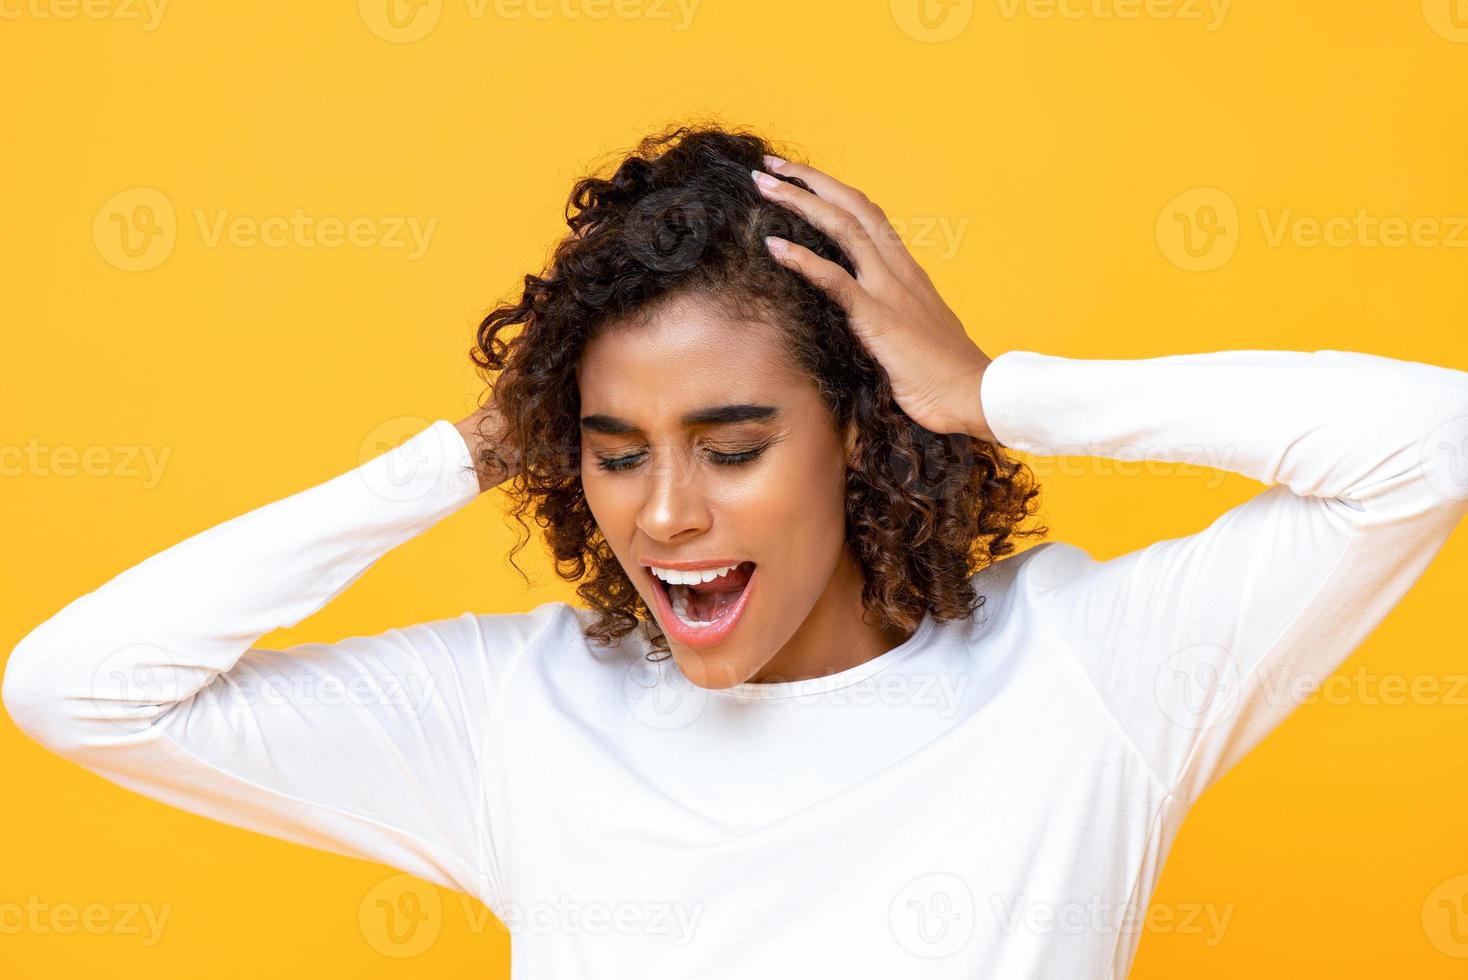 retrato cerrado de una mujer afroamericana confundida gritando mientras sostenía su cabeza con ambas manos en un estudio aislado de fondo amarillo foto